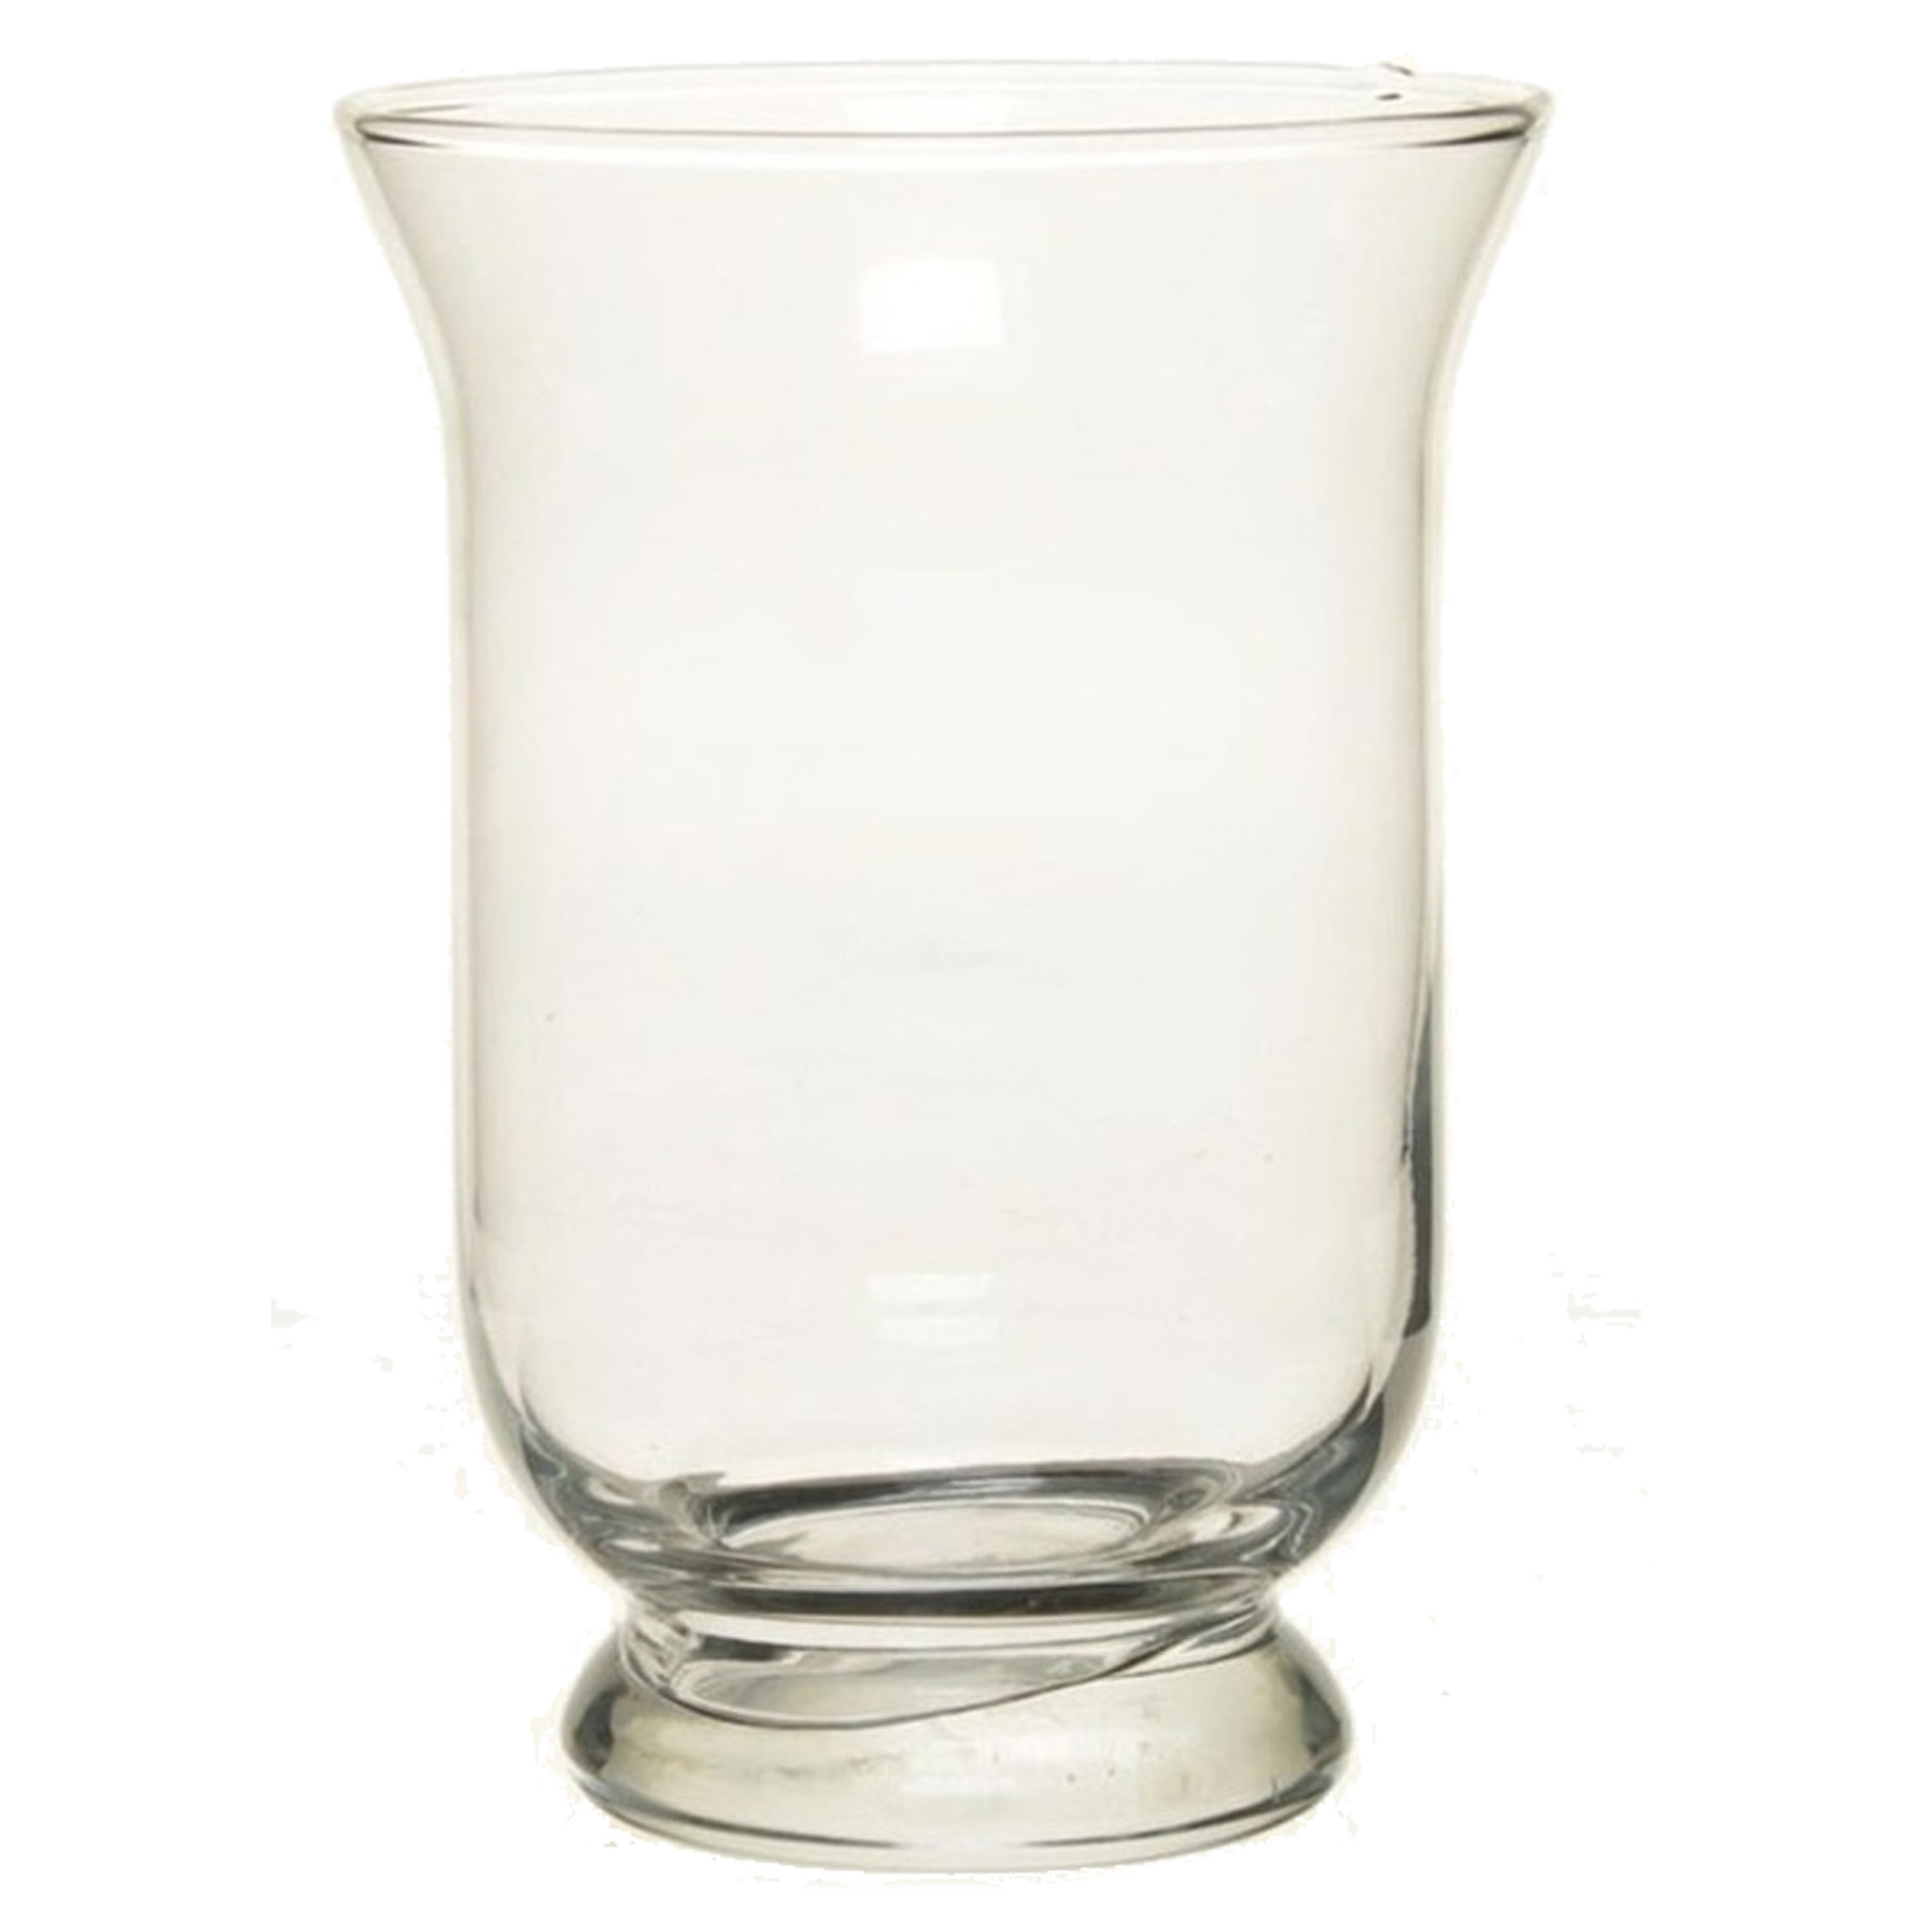 Merkloos Bellatio Design kelk vaas/vazen van glas 19,5cm -